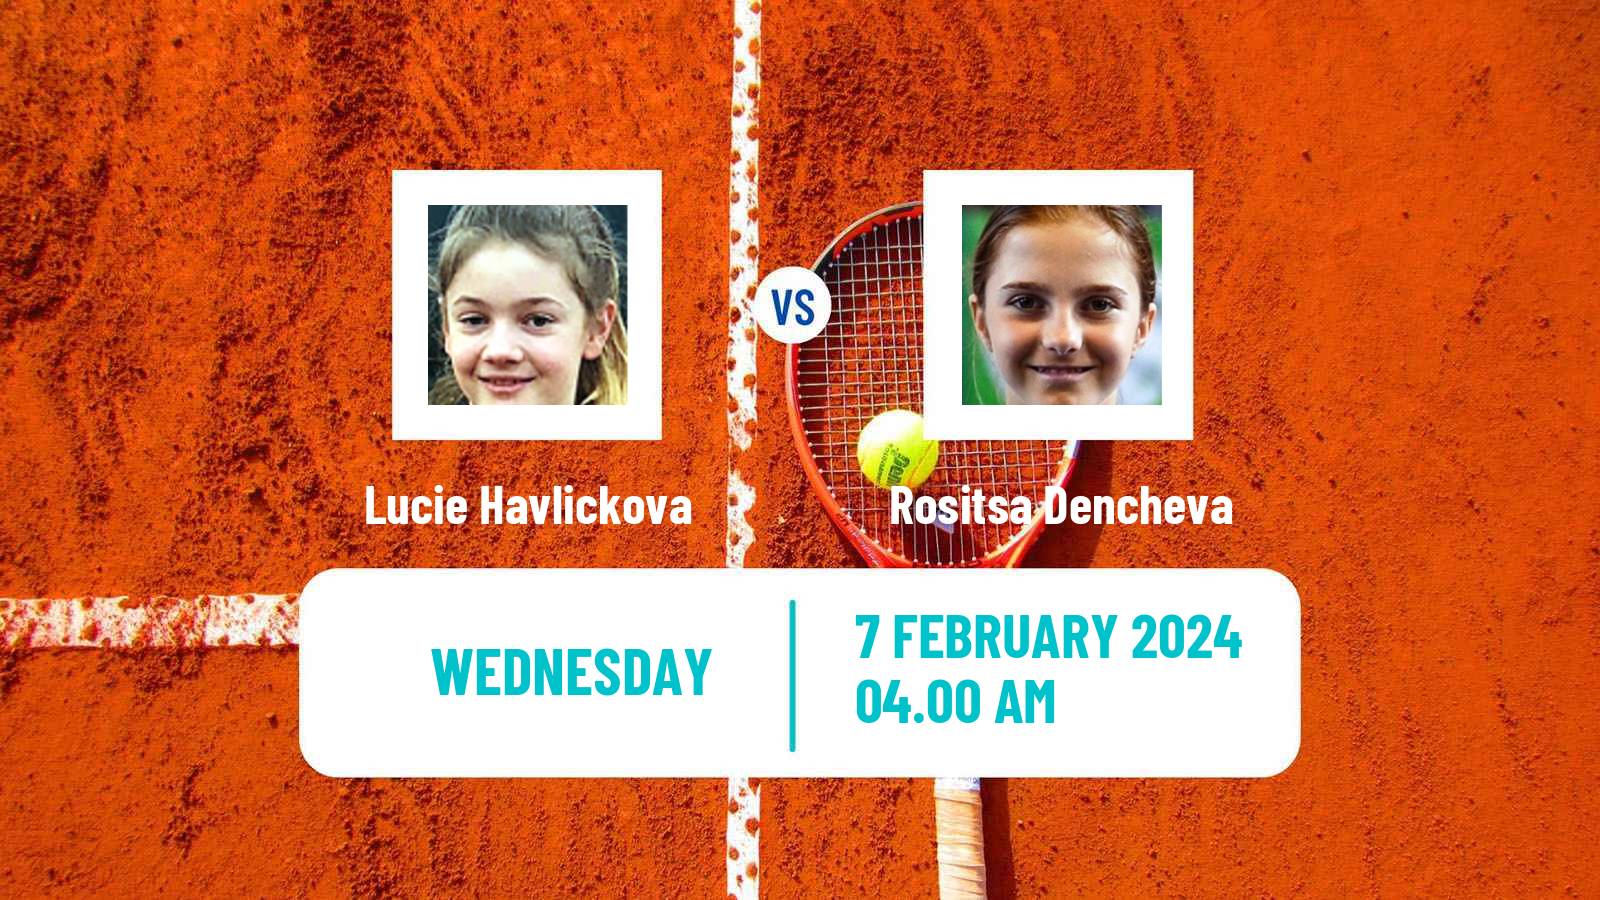 Tennis ITF W35 Antalya 2 Women Lucie Havlickova - Rositsa Dencheva